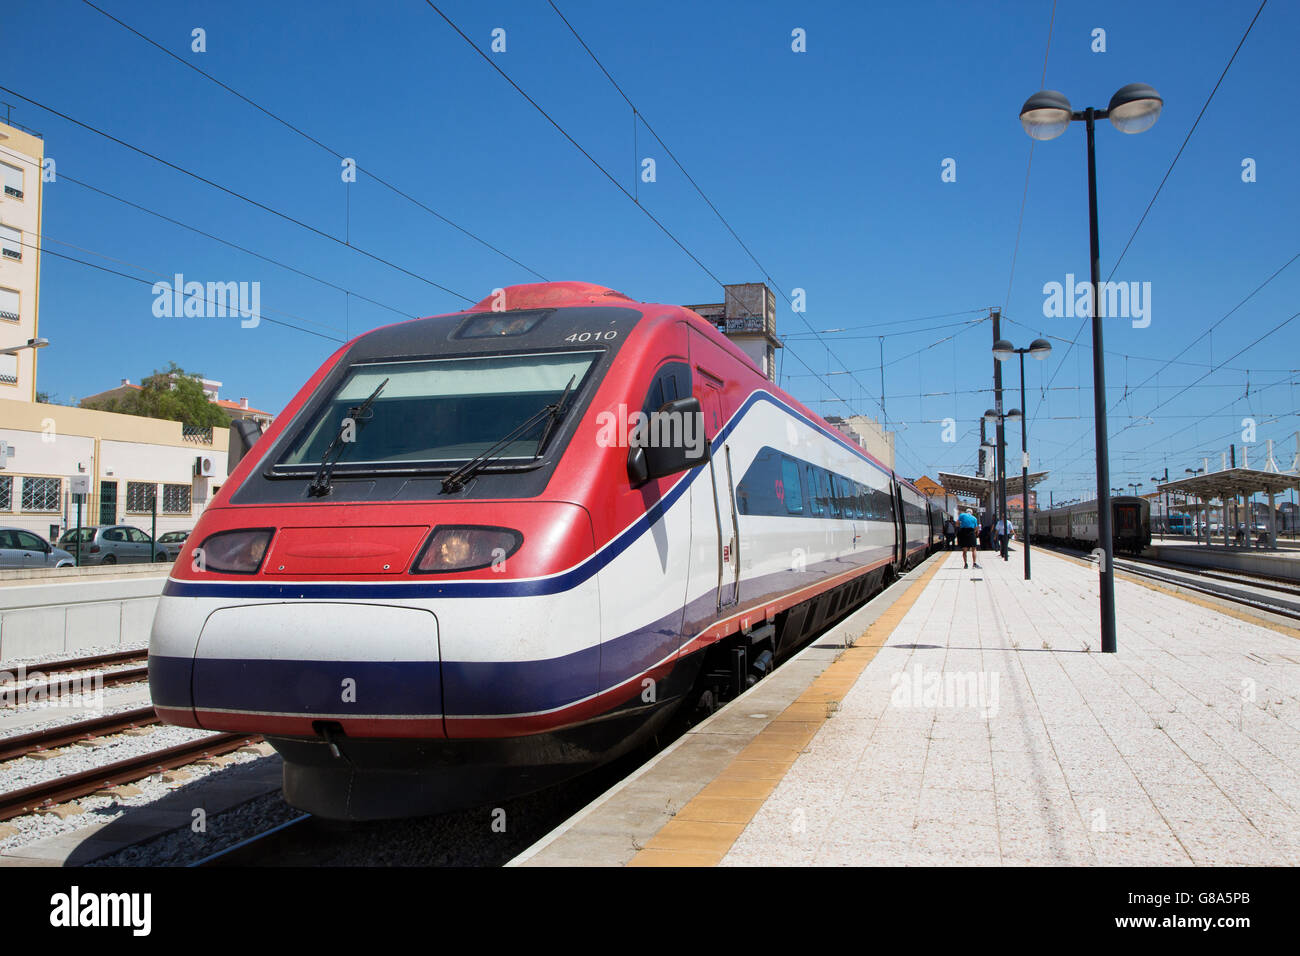 Alta velocità Alfa pendolari pendolino presso Tunes stazione ferroviaria in Algarve, PORTOGALLO Foto Stock